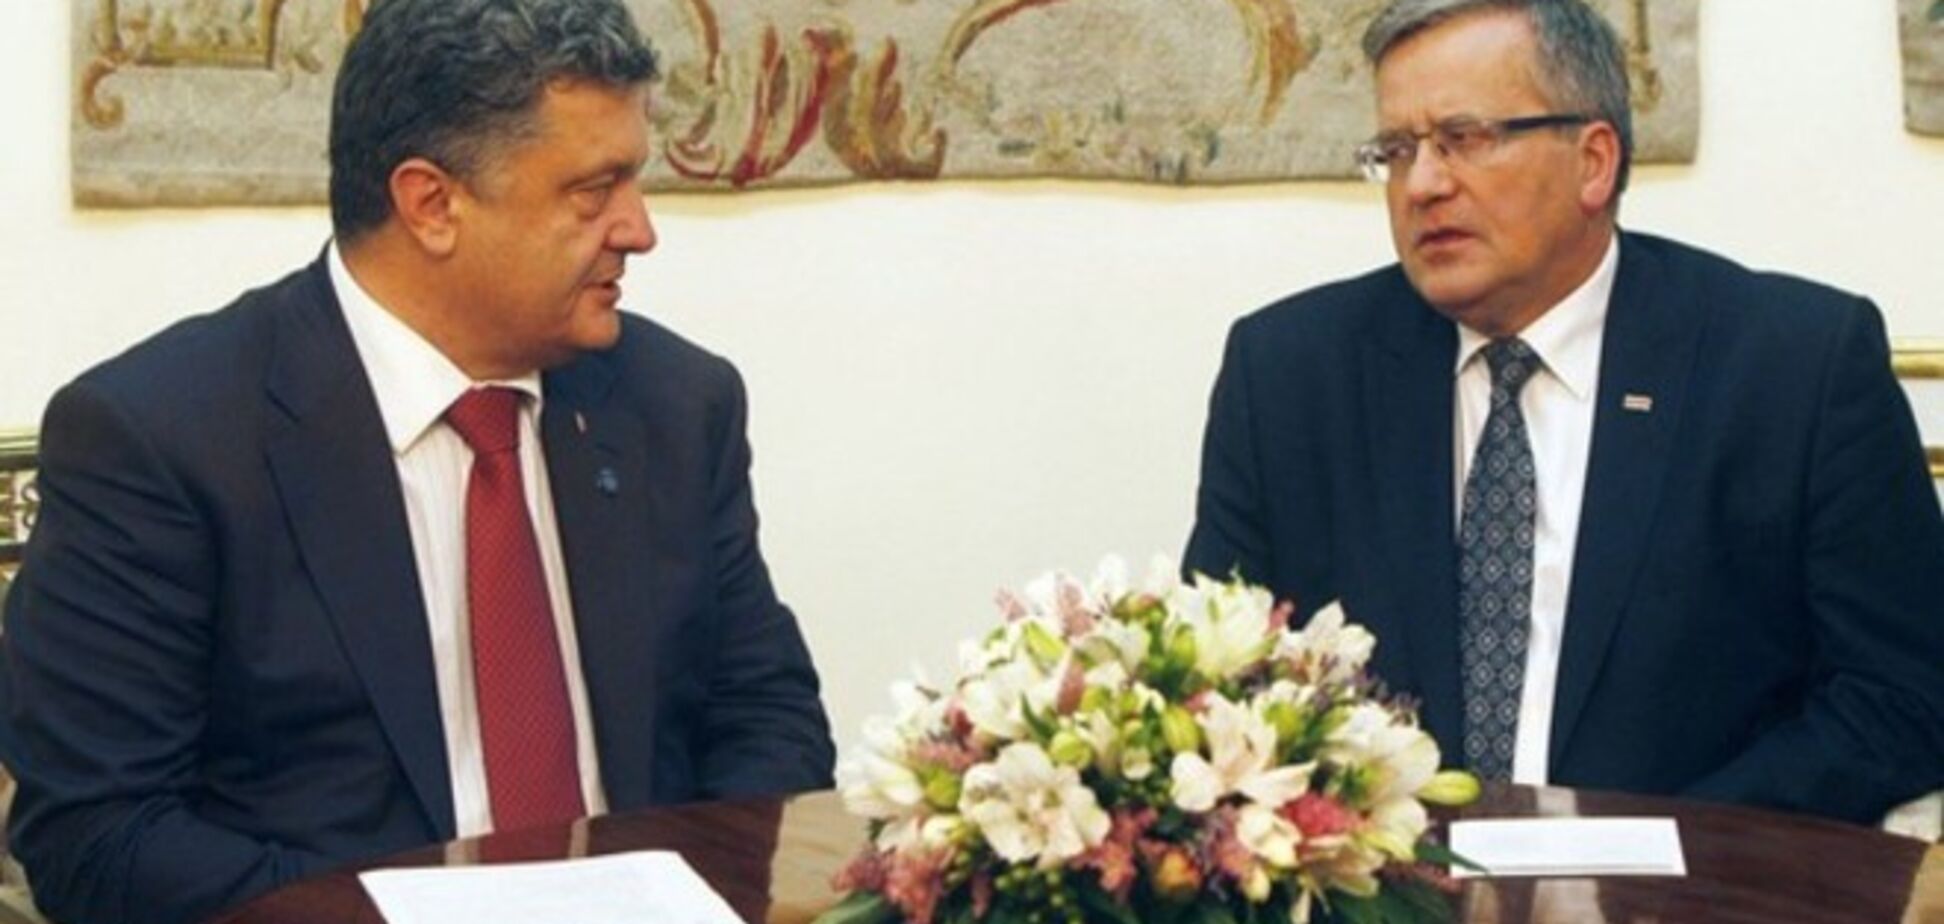 Порошенко обсудил с главой Польши ситуацию на востоке